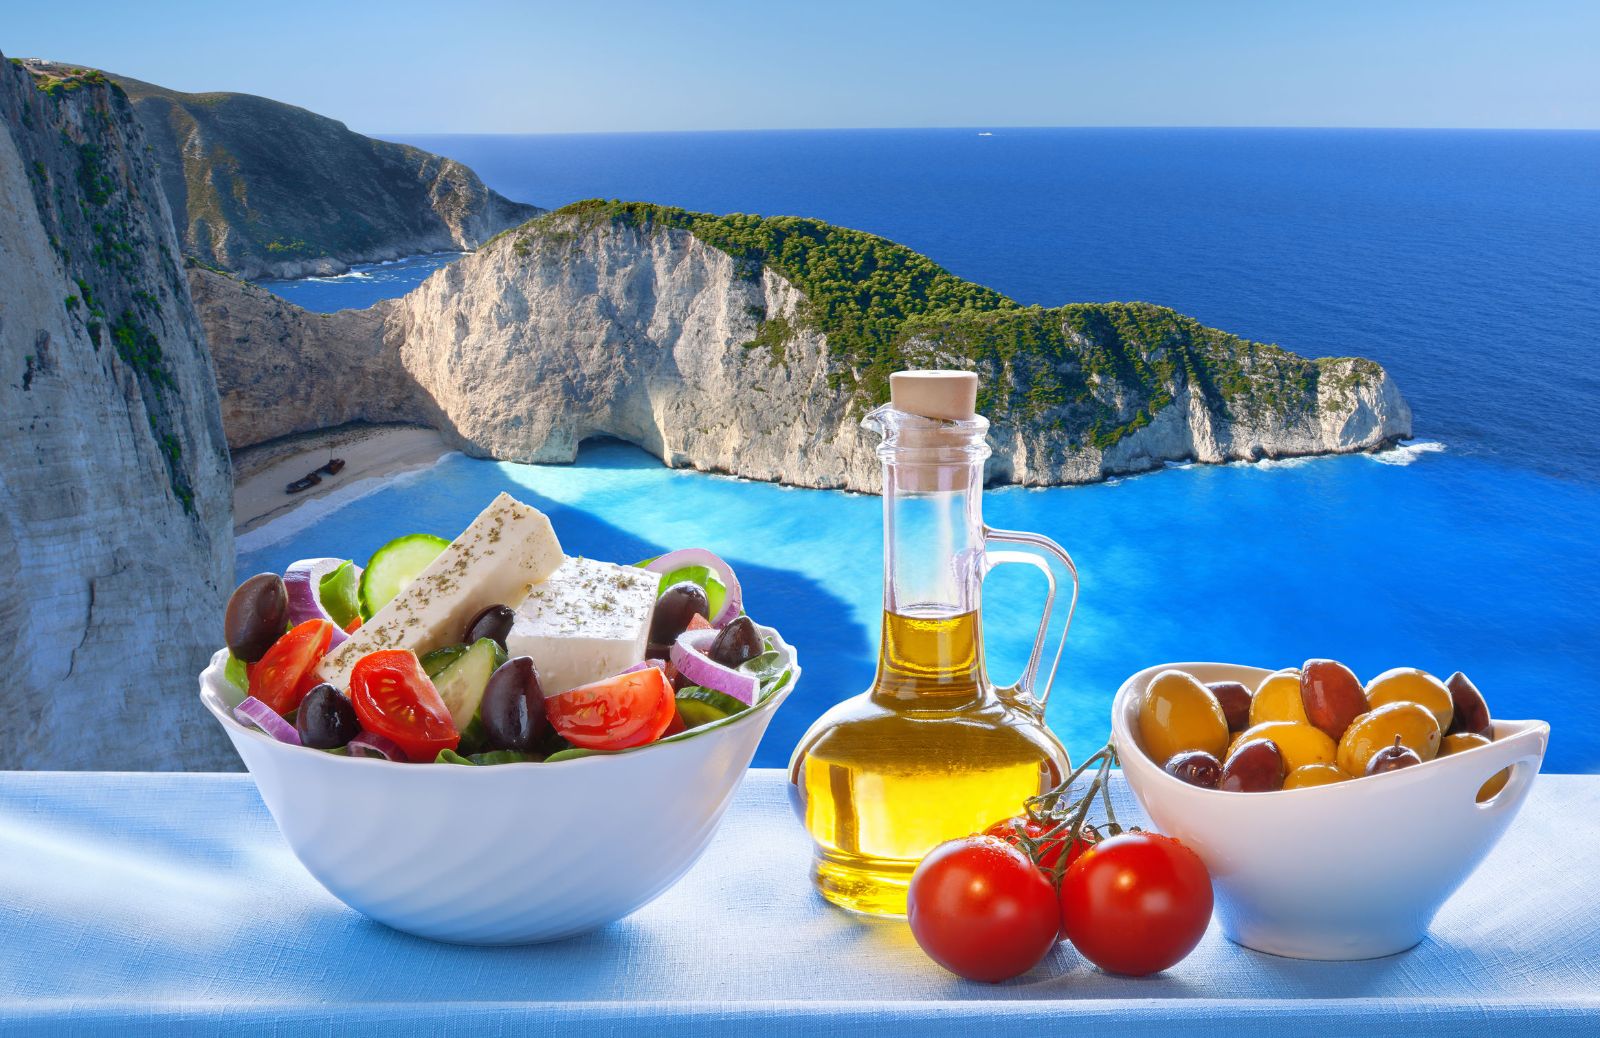 La ricetta originale dell'insalata greca